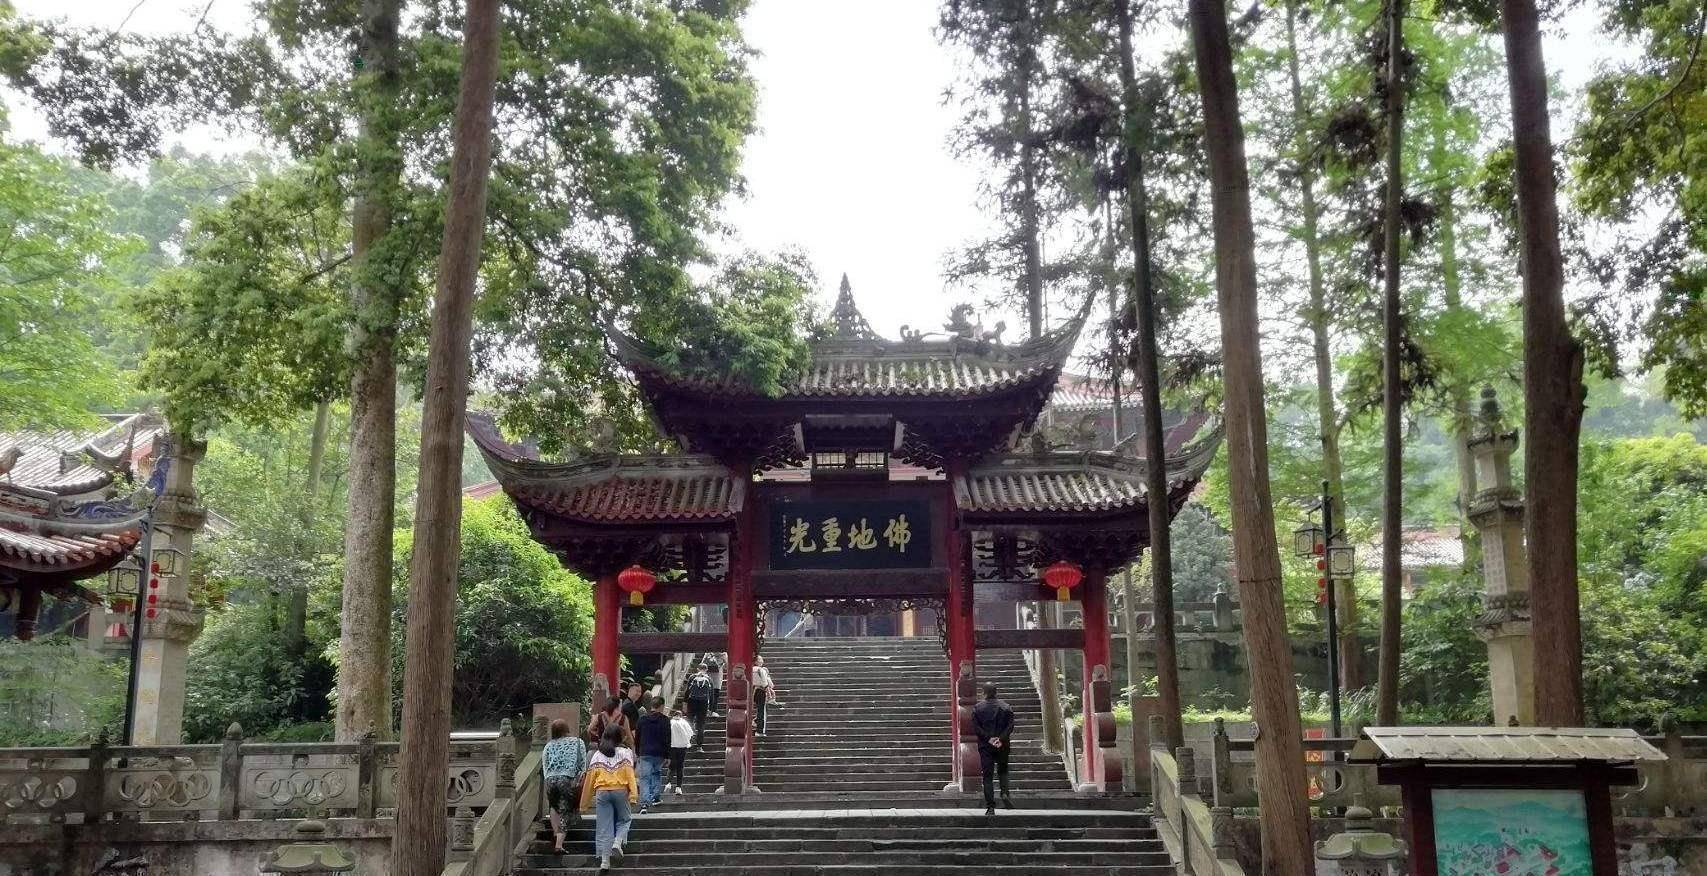 原创四川成都最朴素的寺庙门票才只需2元知道的游客却很少